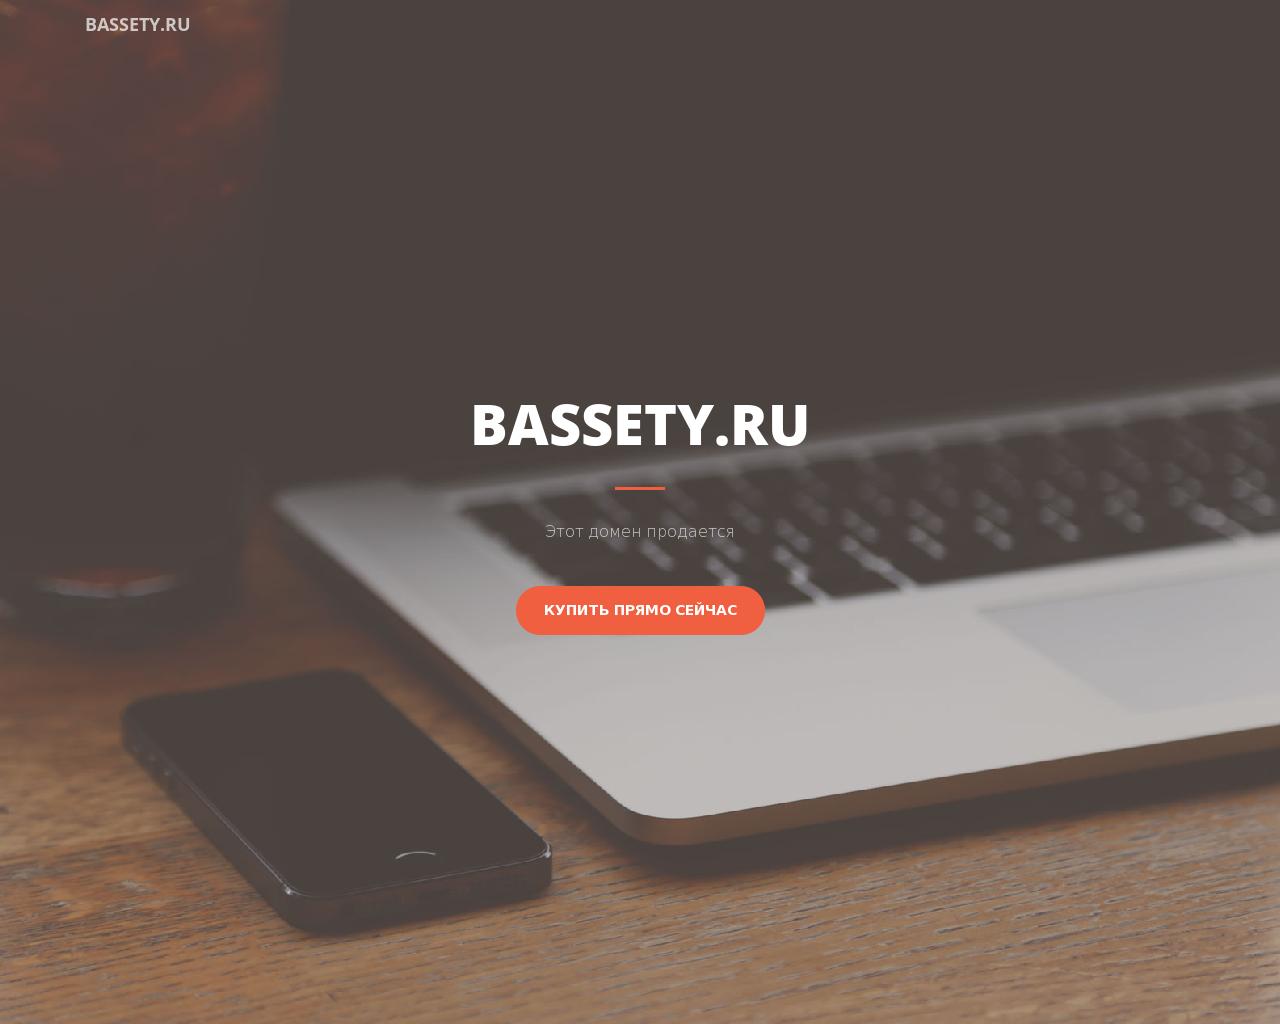 Изображение сайта bassety.ru в разрешении 1280x1024